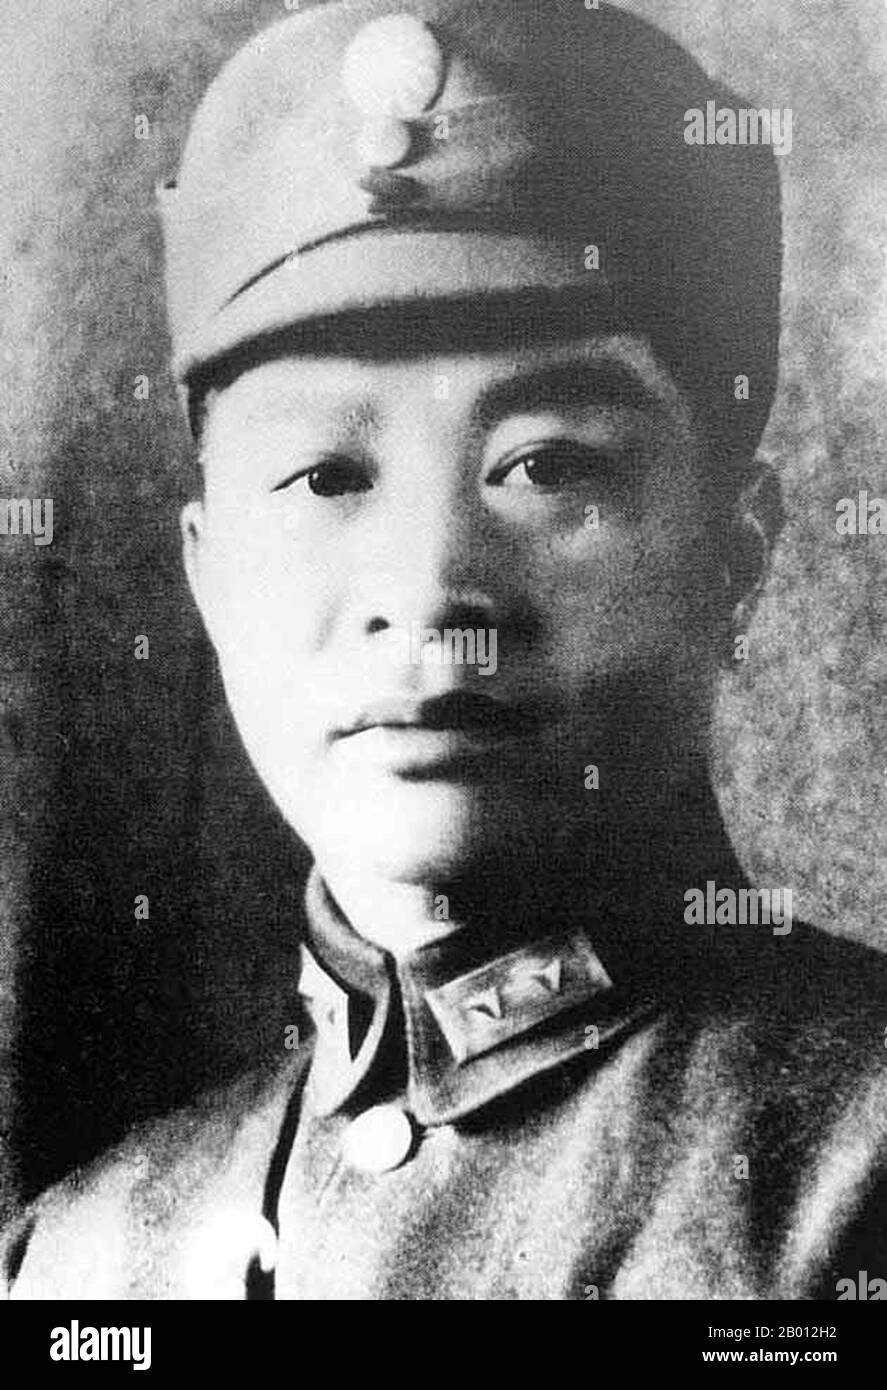 Chine : YE Ting (1896-1946), né à Guangdong, était un chef militaire communiste chinois. YE Ting a rejoint le Kuomintang lorsque Sun Yat-sen l'a fondé en 1919 (le Kuomintang existait avant 1919 mais était appelé le Parti révolutionnaire chinois) et à partir de 1921 était un commandant de bataillon dans l'Armée révolutionnaire nationale. En 1924, il étudie en Union soviétique et, en décembre de cette année, il rejoint le Parti communiste chinois. En septembre 1925, il est retourné en Chine pour servir d'abord comme officier d'état-major, puis comme commandant de régiment indépendant, dans la nouvelle quatrième armée de l'Armée révolutionnaire nationale. Banque D'Images